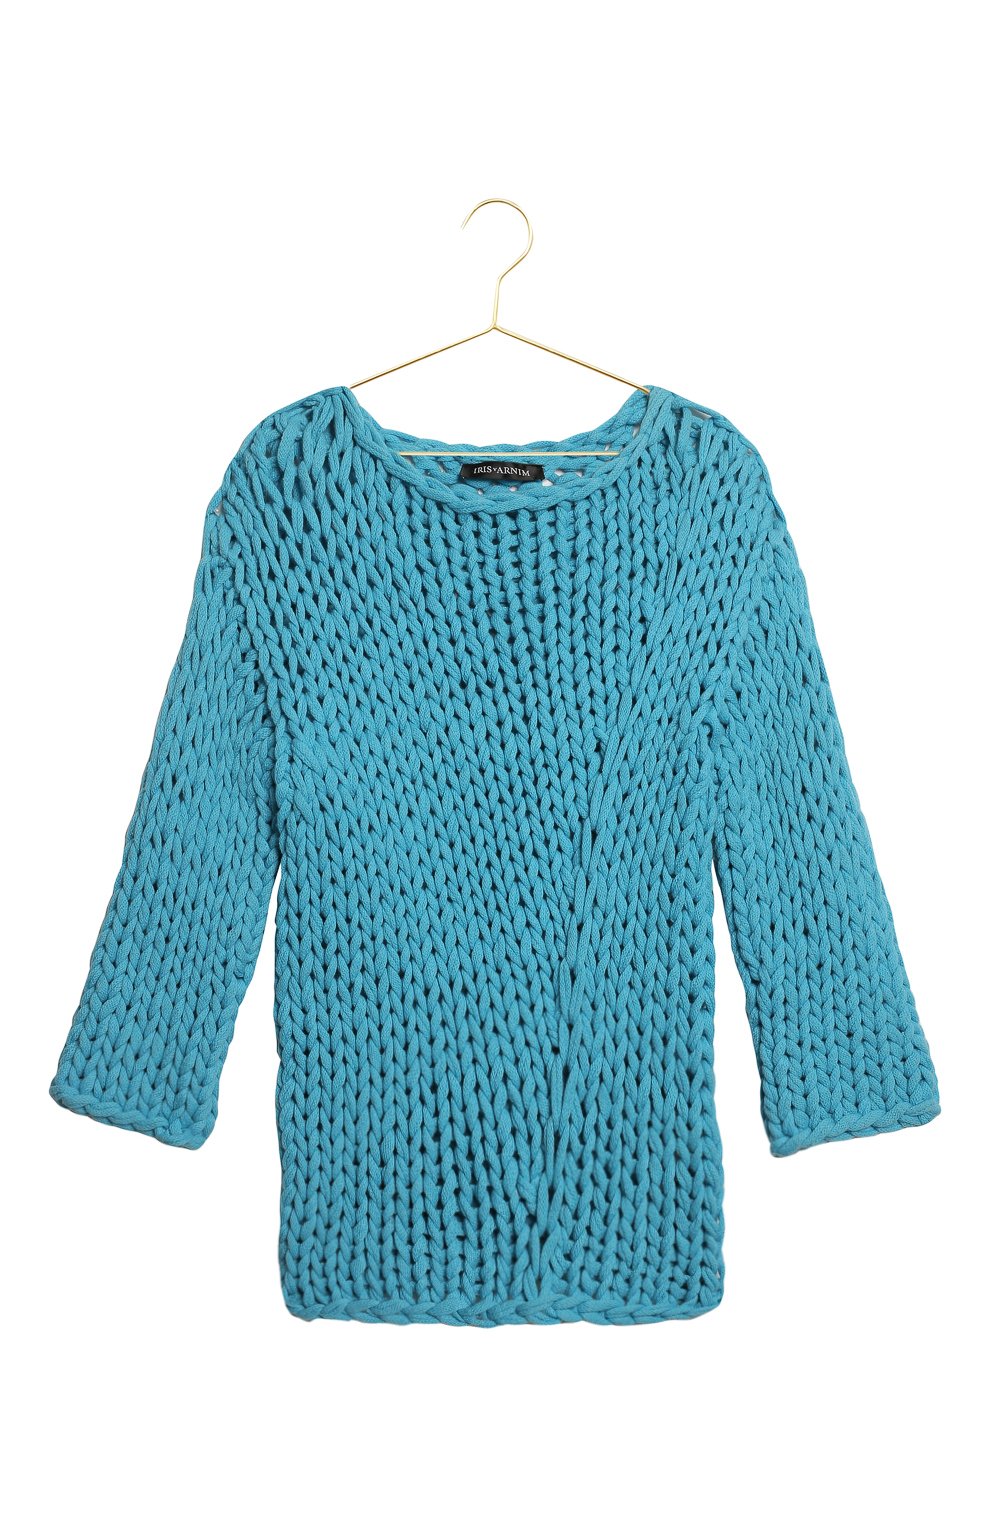 Кашемировый свитер | Iris Von Arnim | Голубой - 1